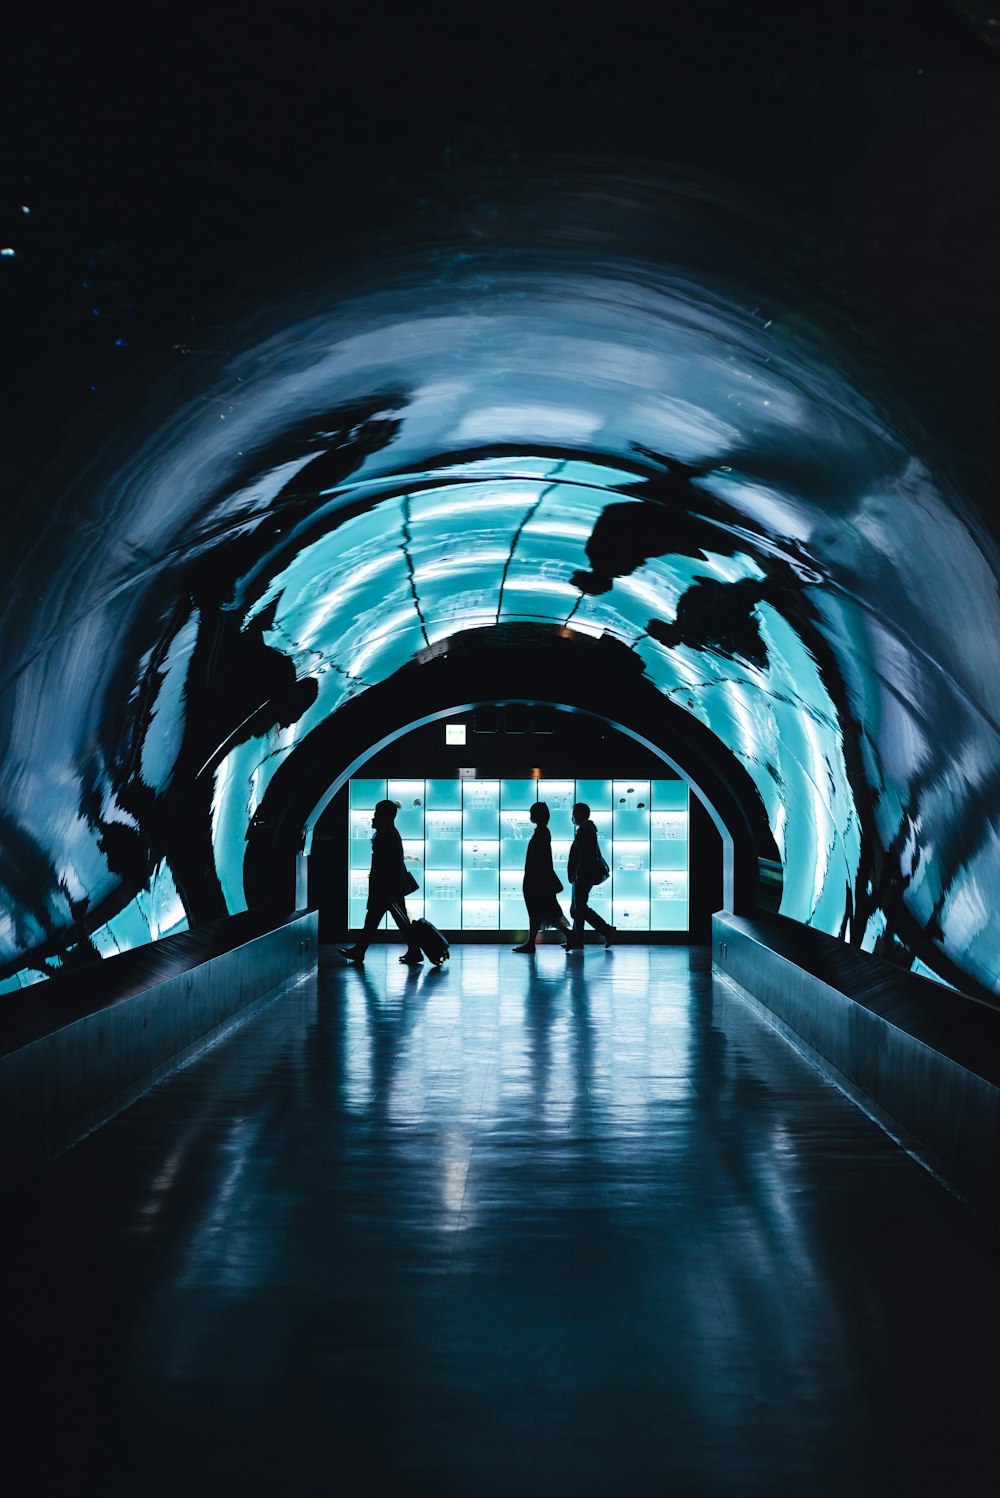 Silueta de tres personas caminando cerca del túnel